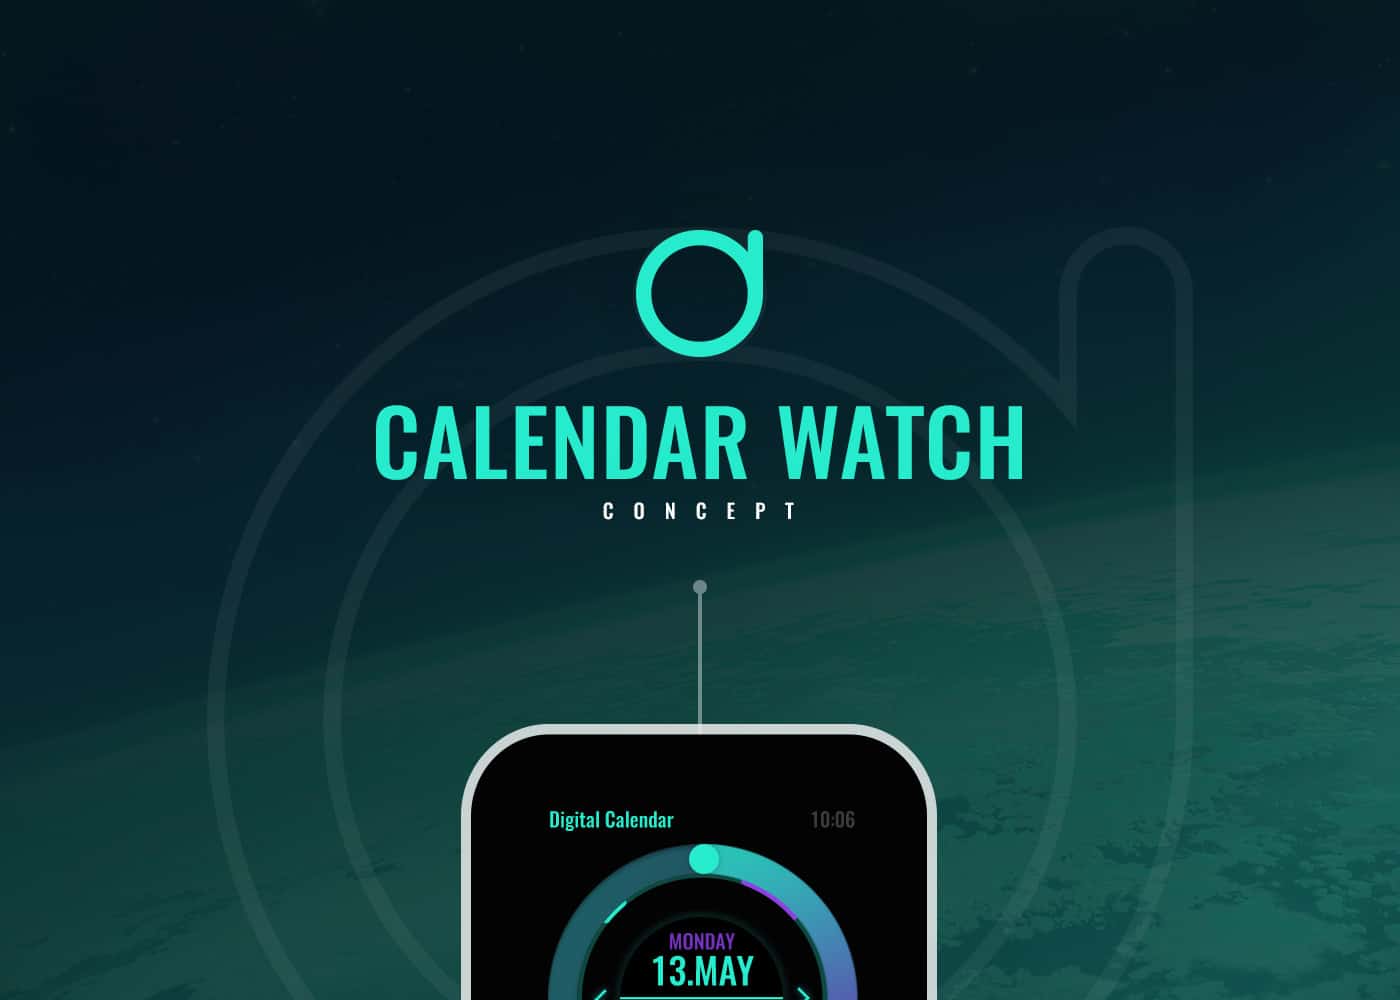 Calendar Watch Concept